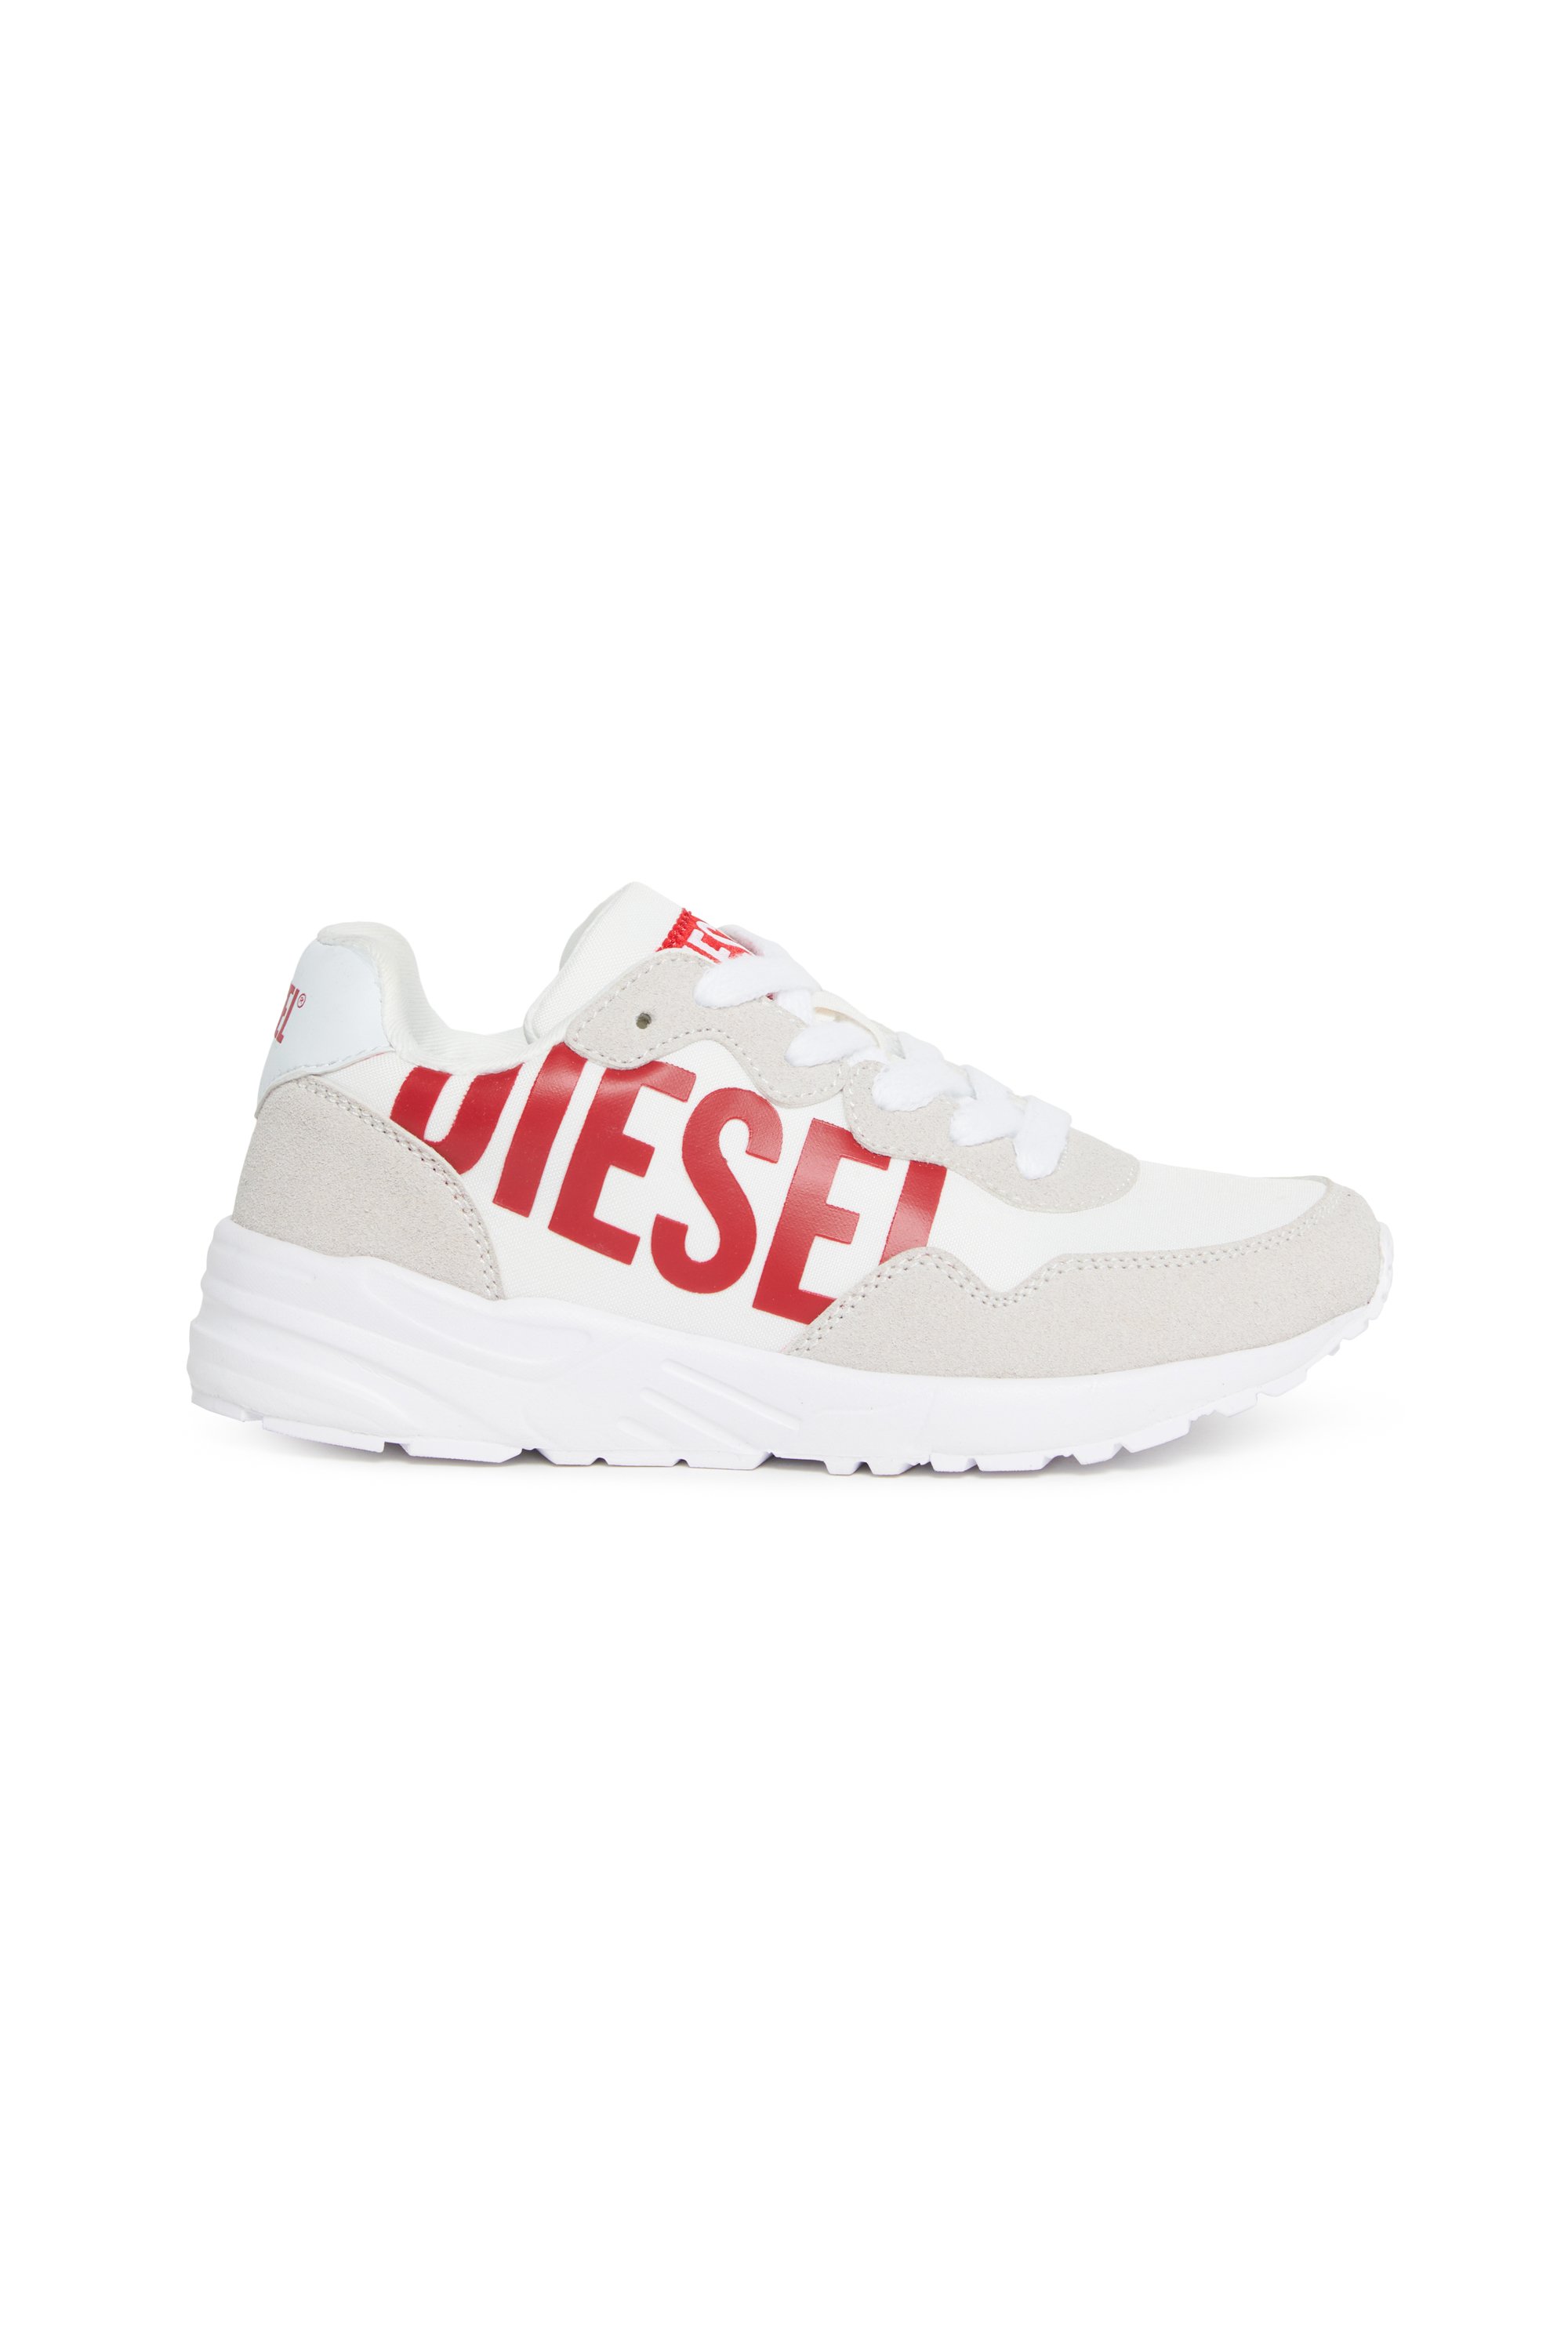 Diesel - Sneakers en nylon avec imprimé Diesel brillant - Footwear - Mixte - Polychrome